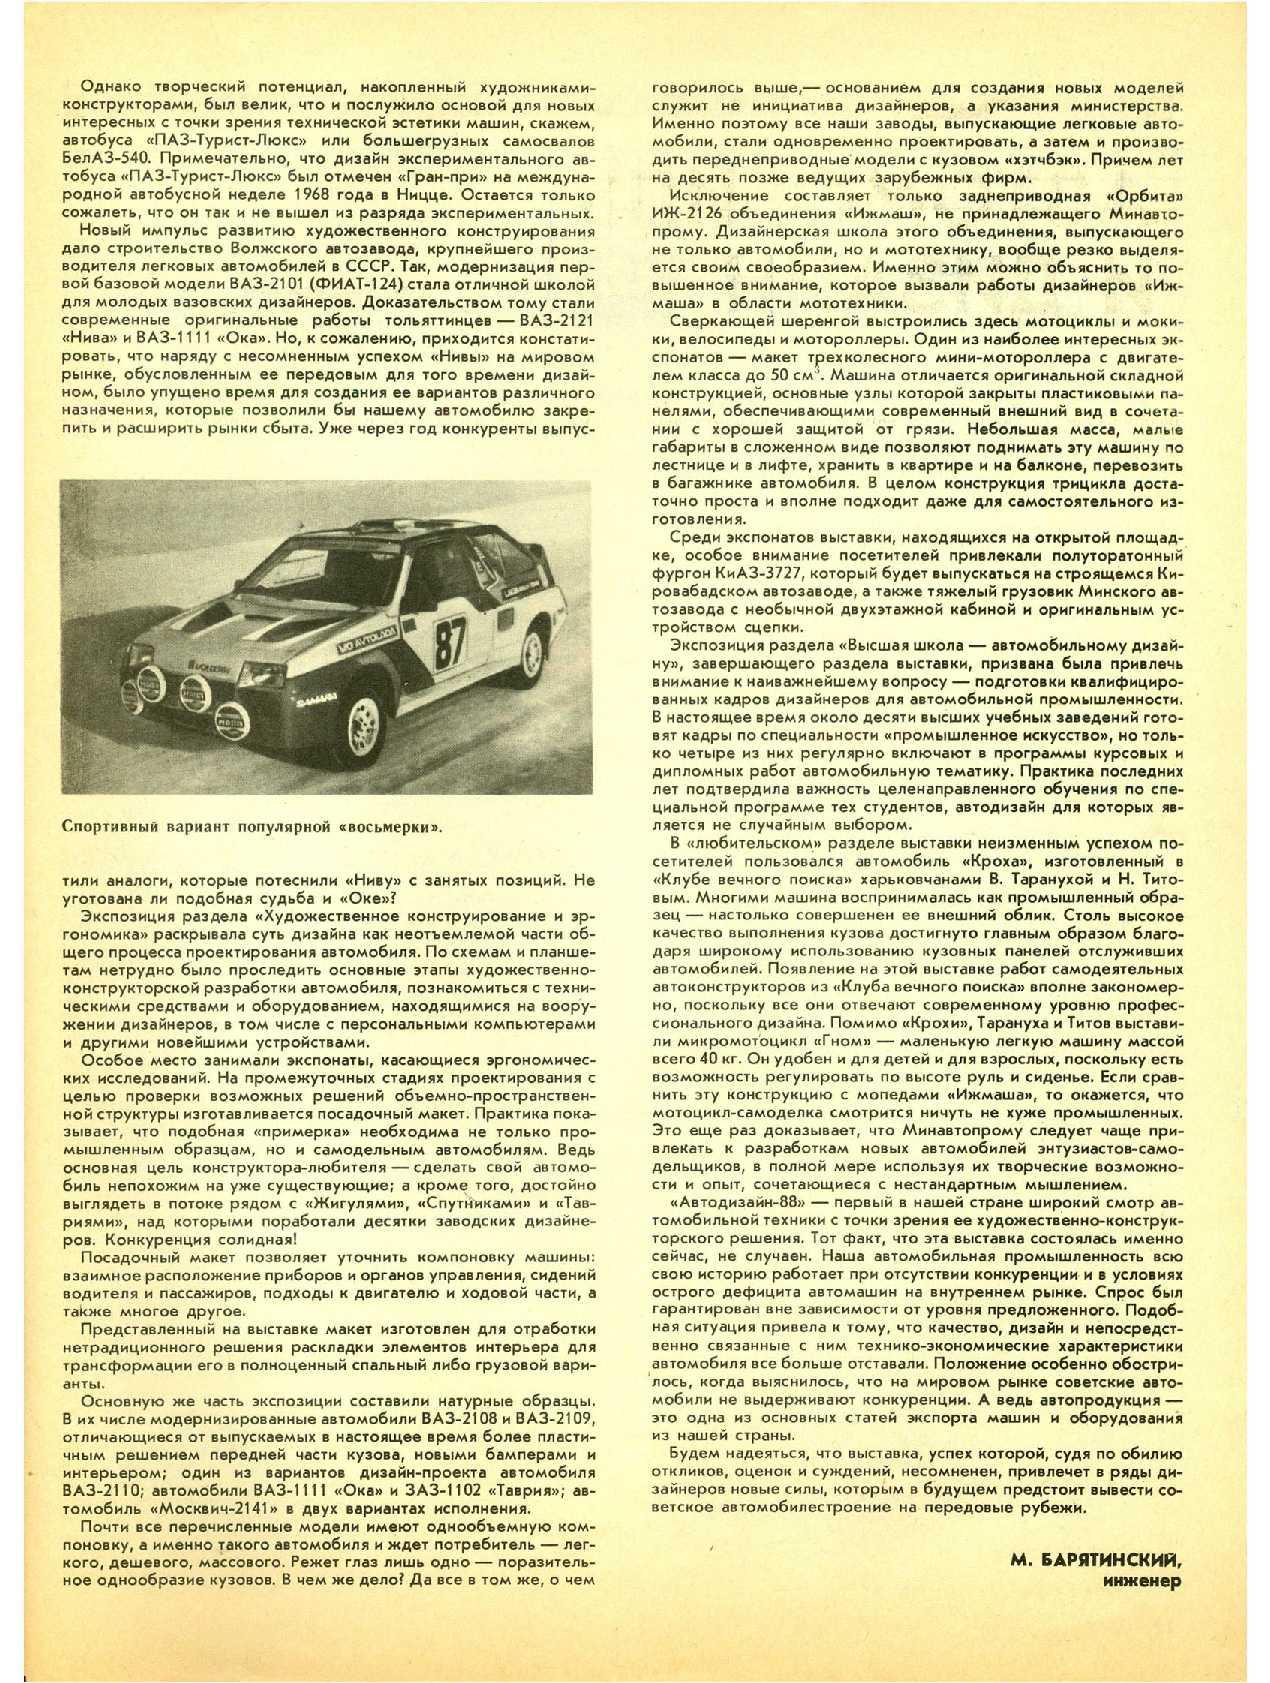 МК 7, 1989, 47 c.